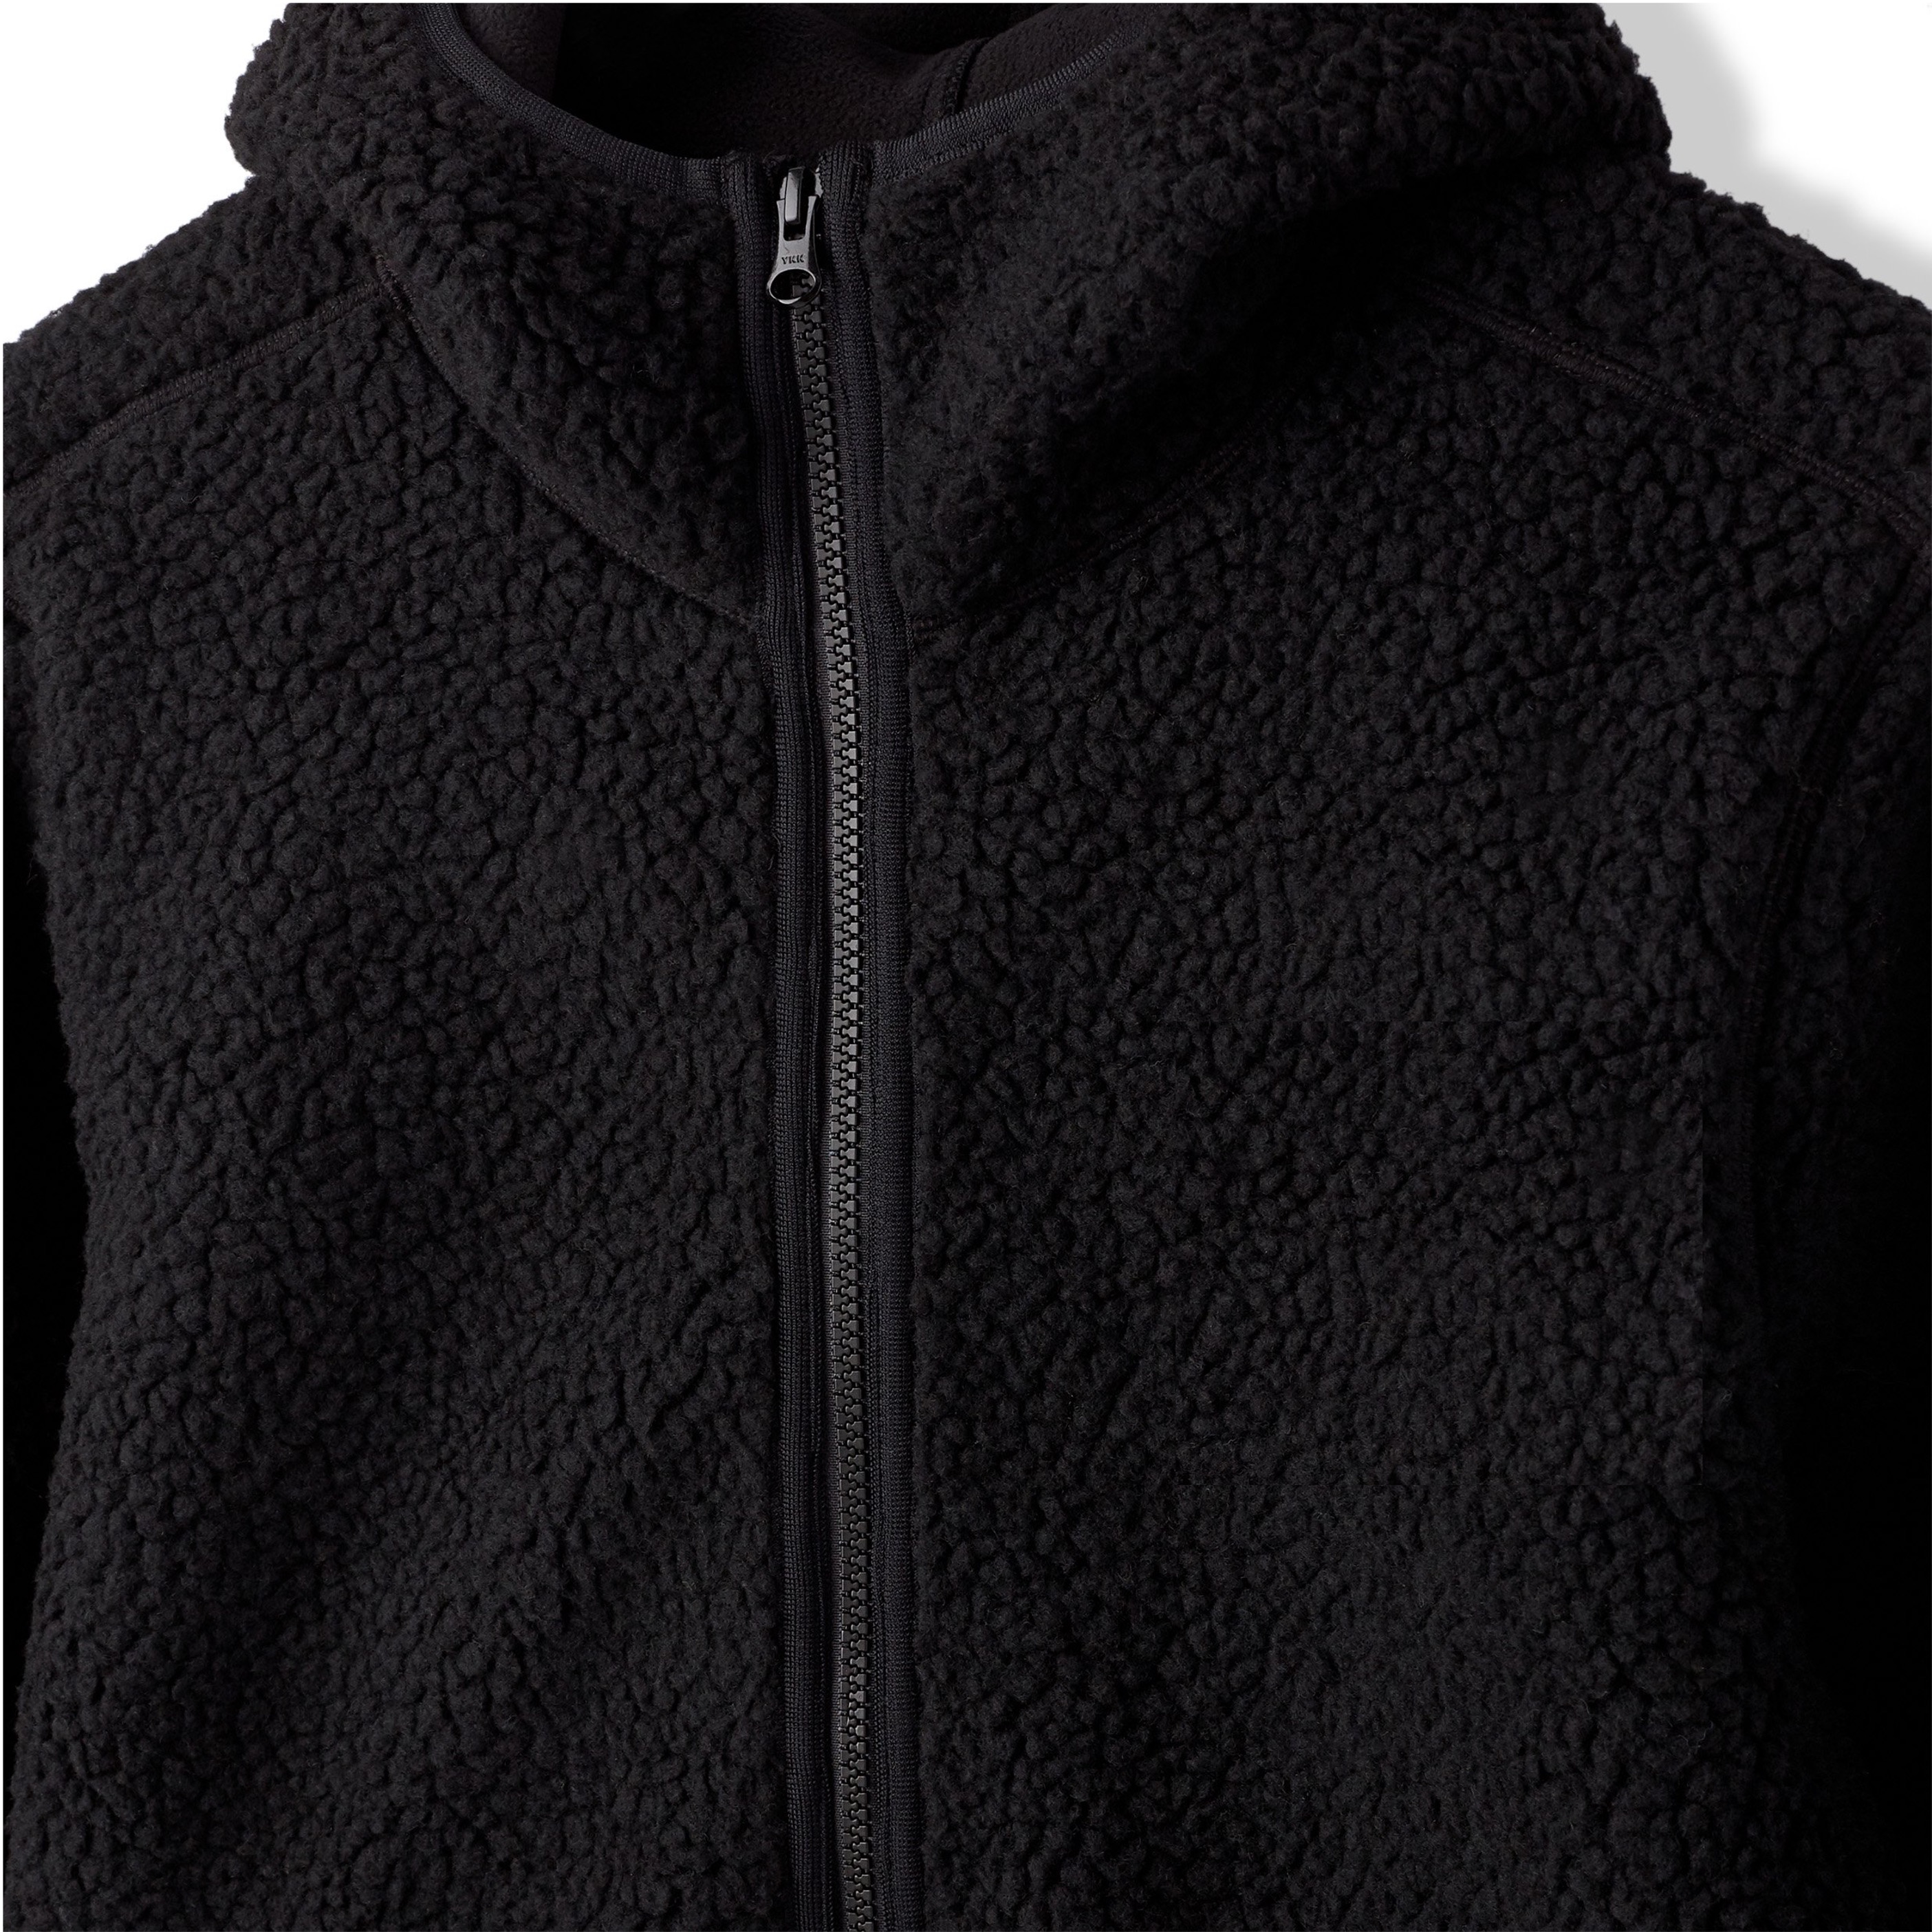 Men's Winter Thermal Sherpa Heavy Zip Hoodies Fleece Jackets Top